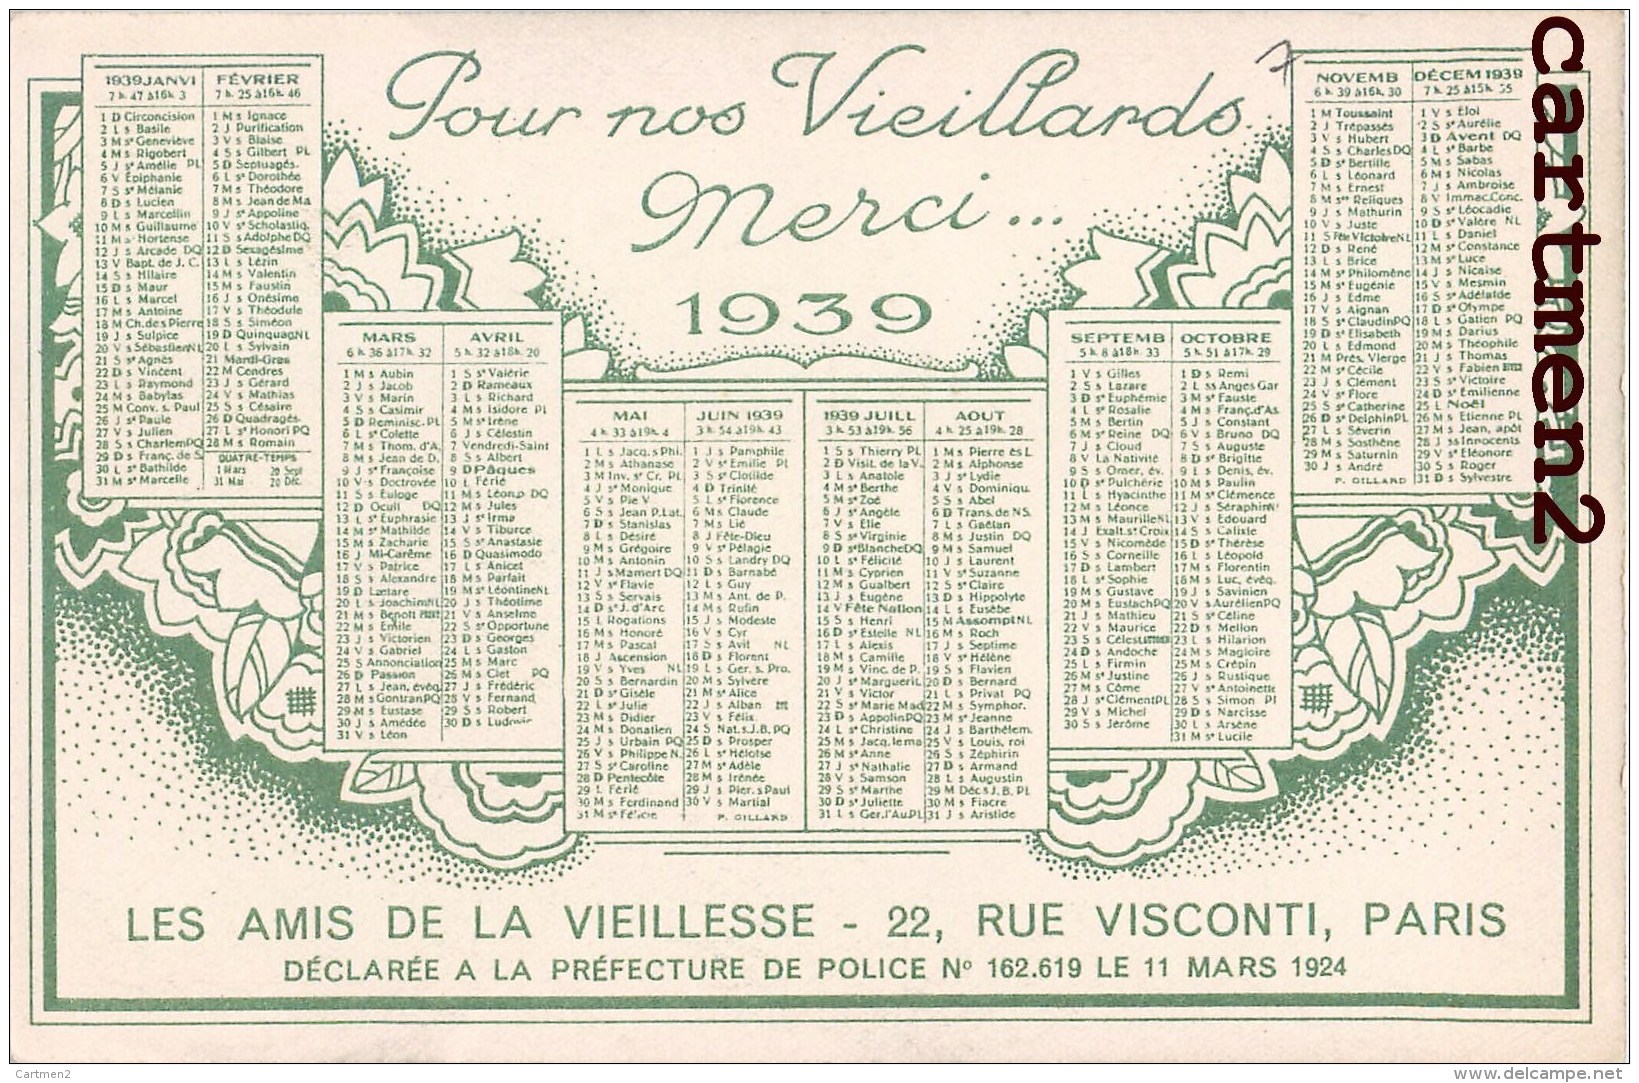 CALENDRIER ANNEE 1939 LES AMIS DE LA VIEILLESSE 22 RUE VISCONTI PARIS ASSOCIATION CARITATIVE ILLUSTRATEUR - Syndicats